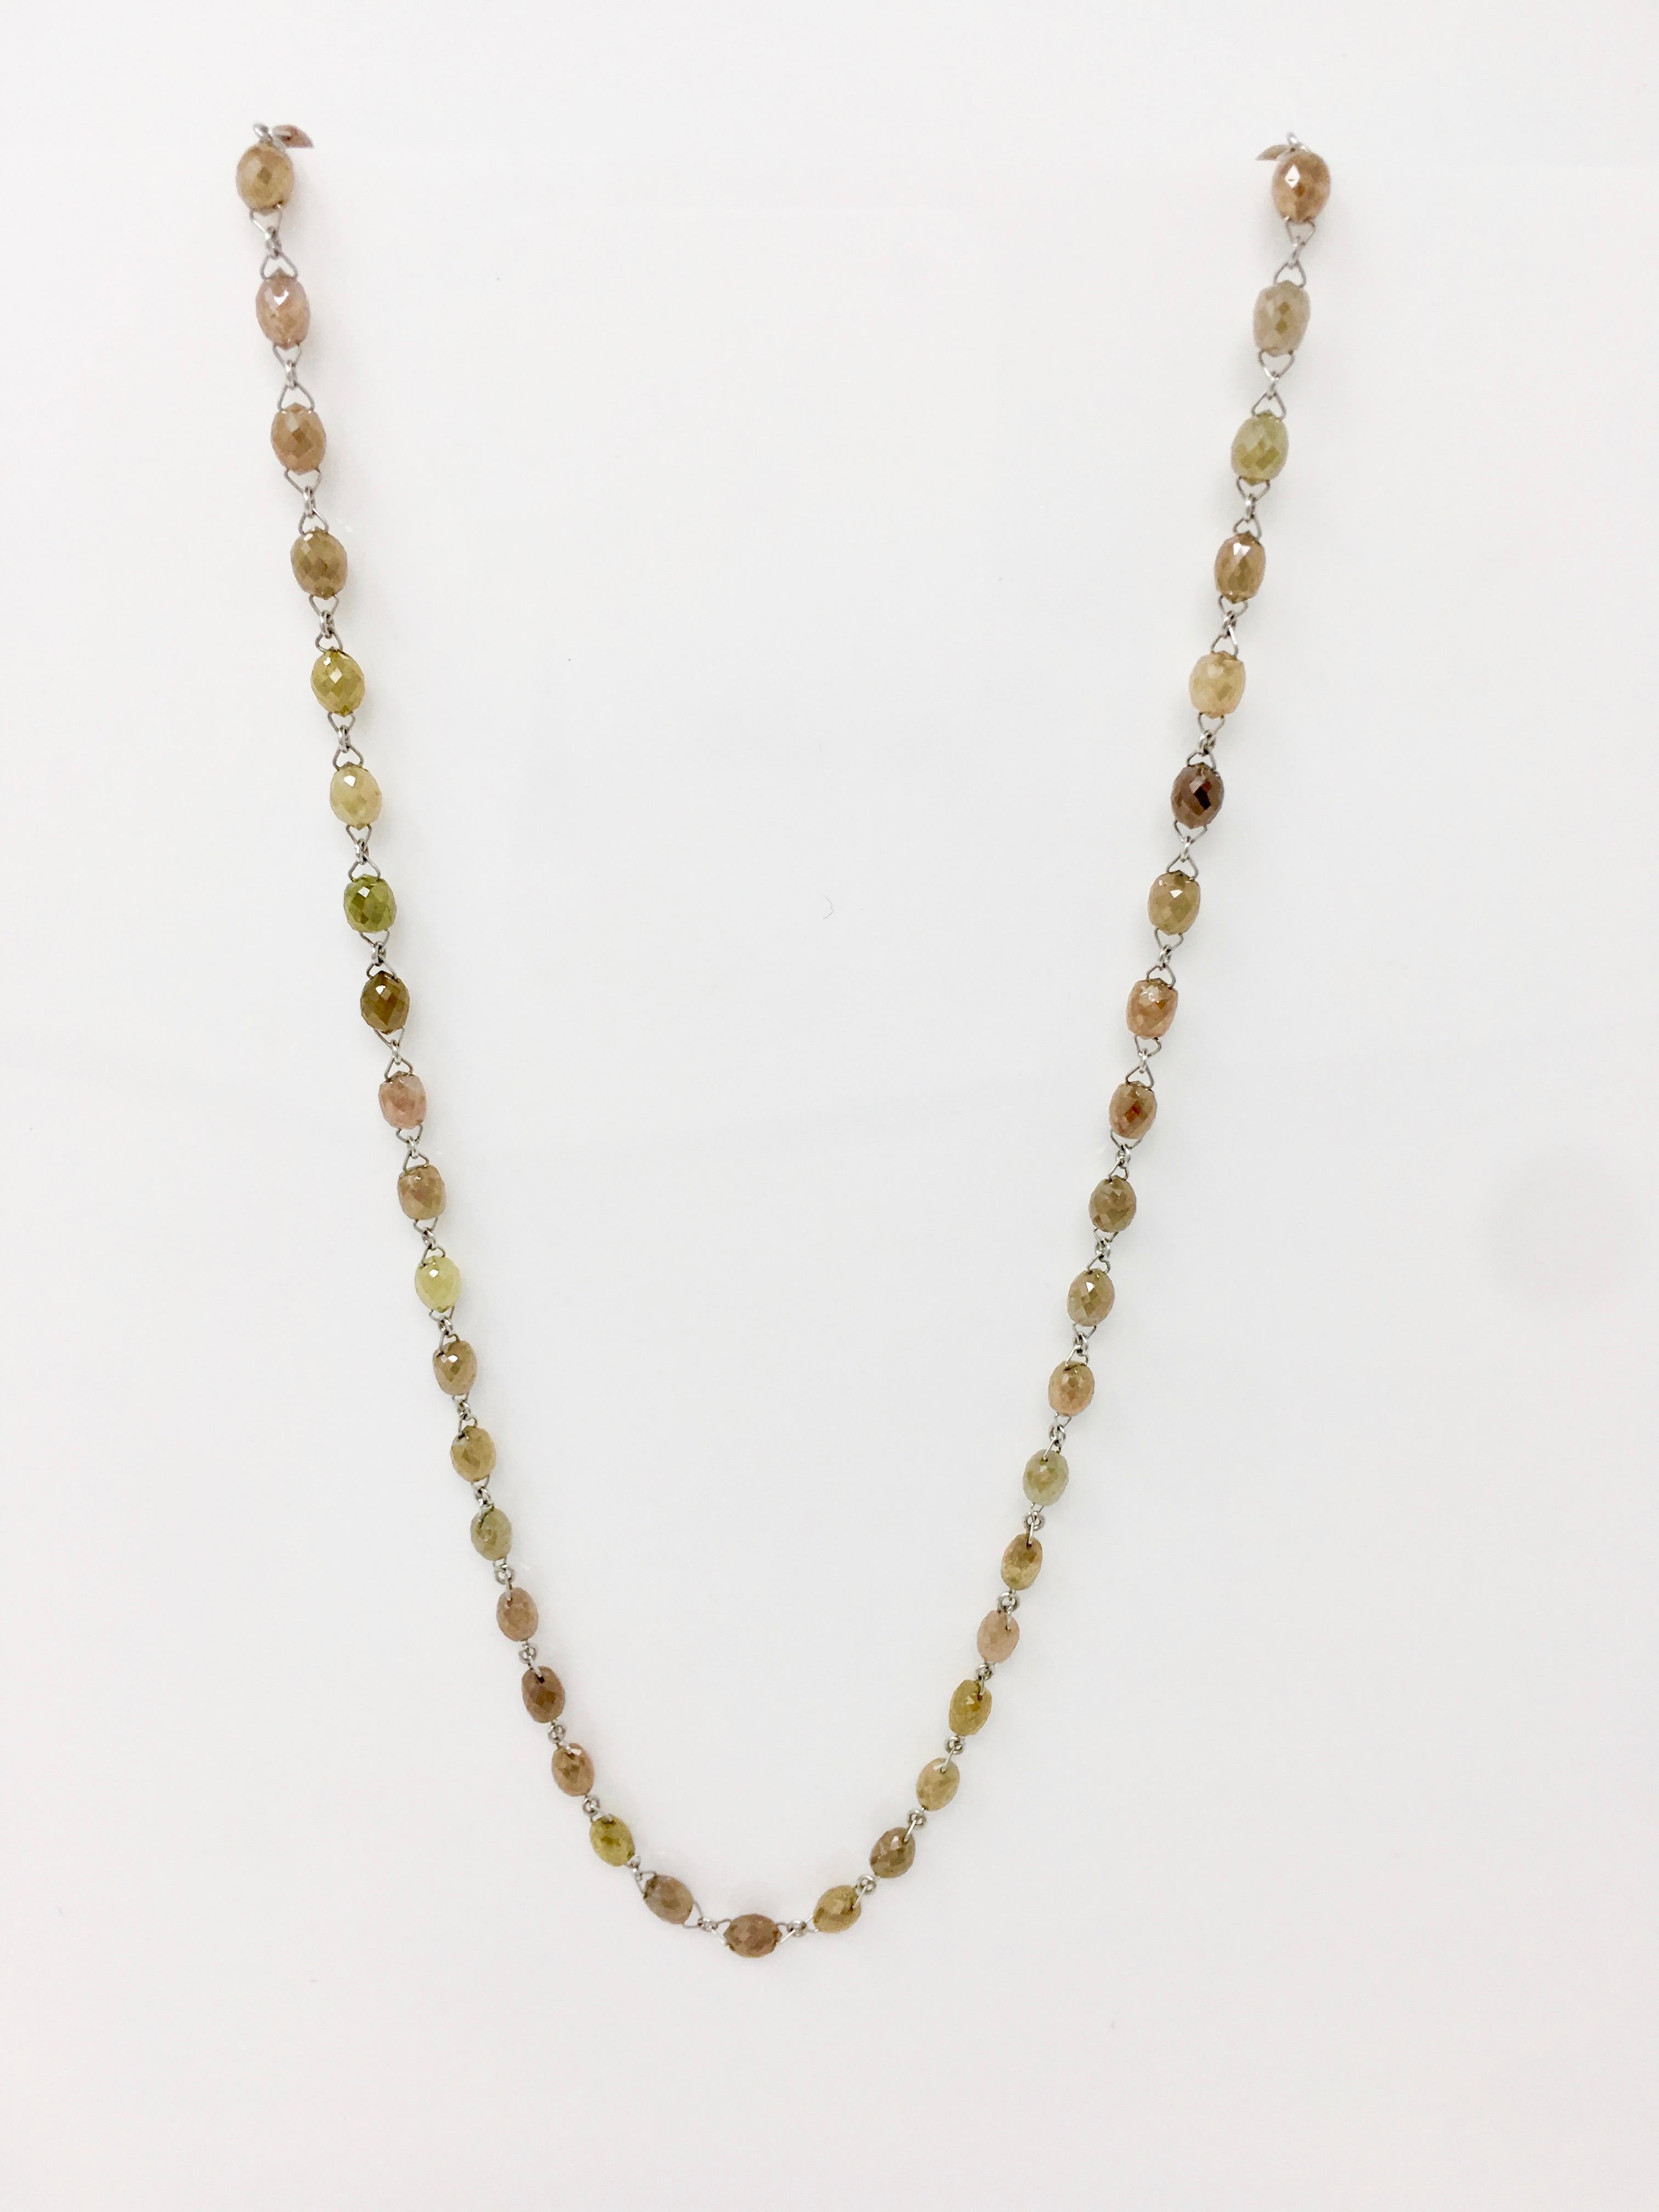 Collier tout simplement élégant avec des facettes étincelantes multicolores  perles de diamant (avec des nuances de vert, rose et brun) pesant 40 carats. Fabriqué à la main aux États-Unis par un maître bijoutier en or 18k. Élégant et gracieux, ce